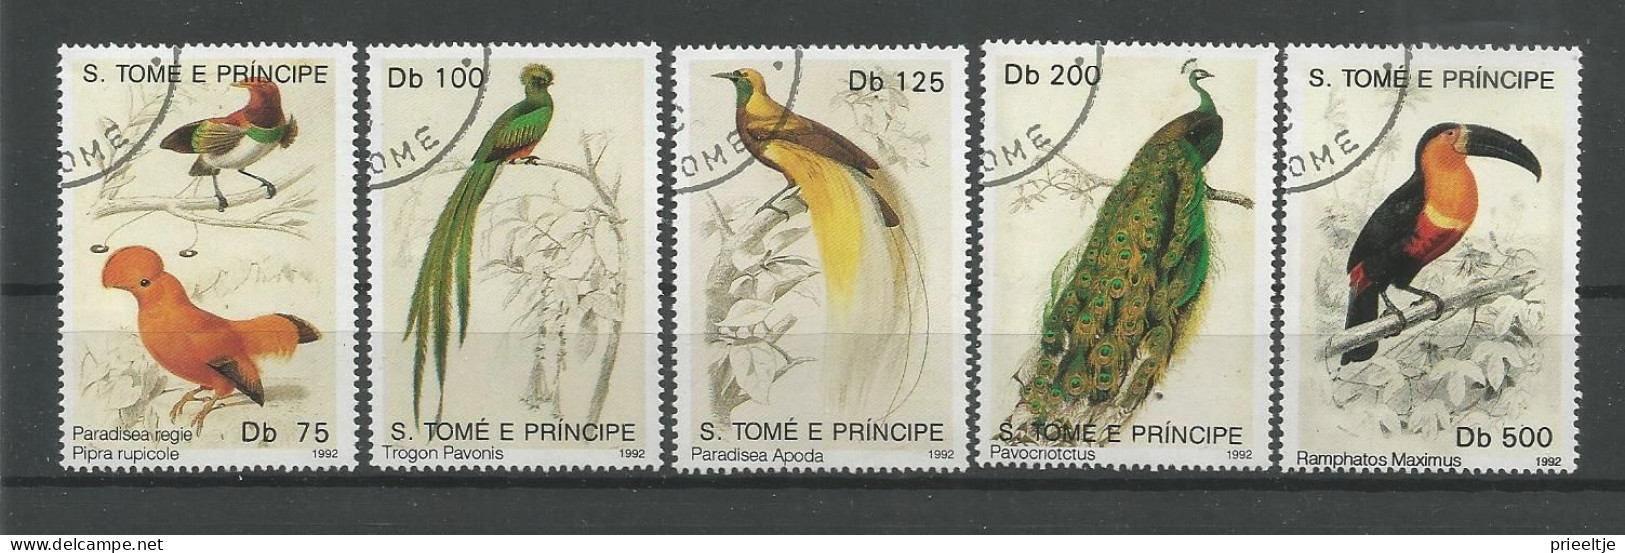 St Tome E Principe 1992 Birds  Y.T. 1099/1103 (0) - Sao Tome En Principe